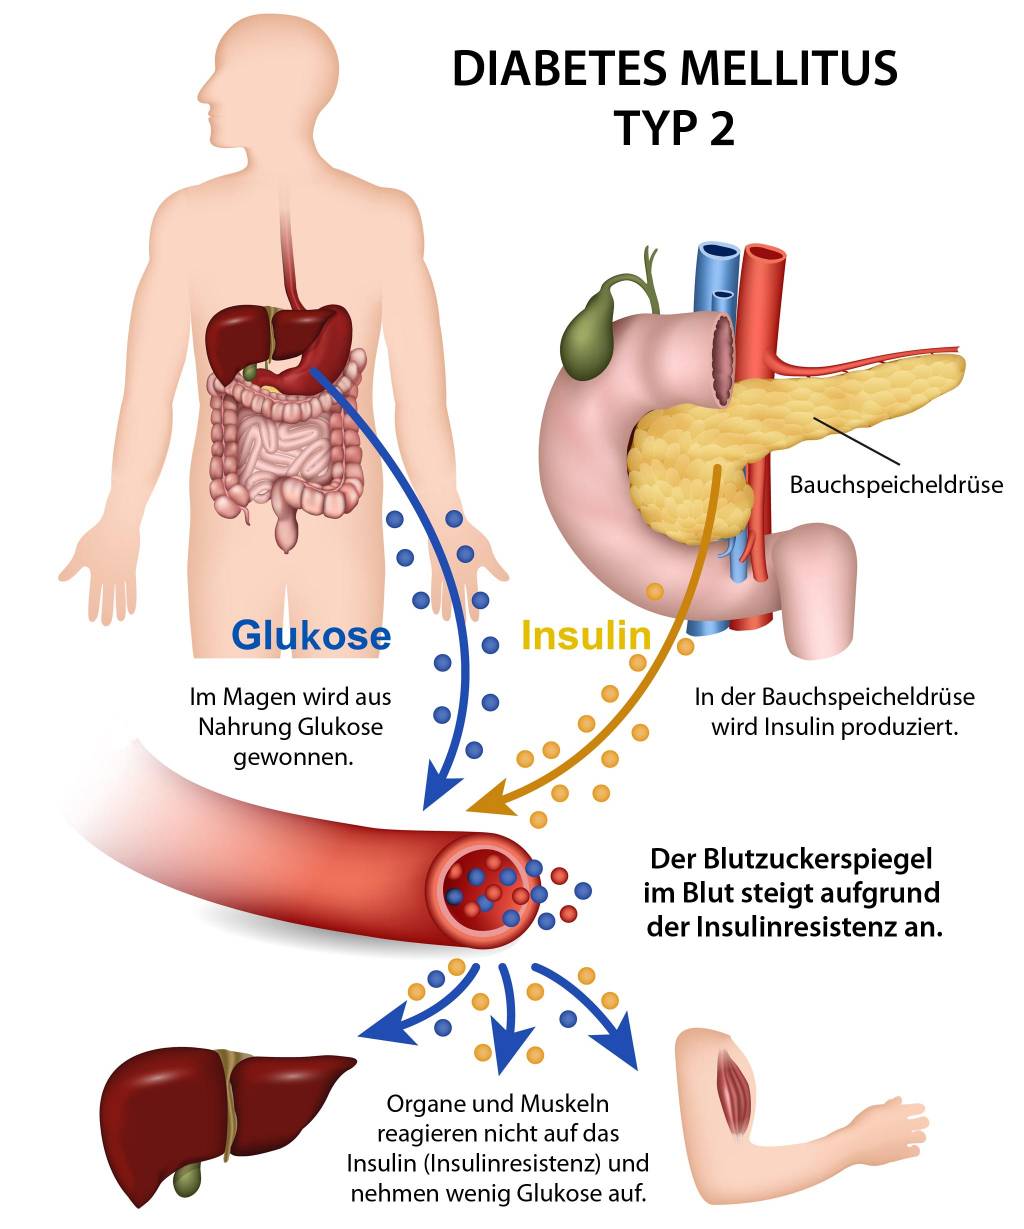 diabetes mellitus typ 2: symptome